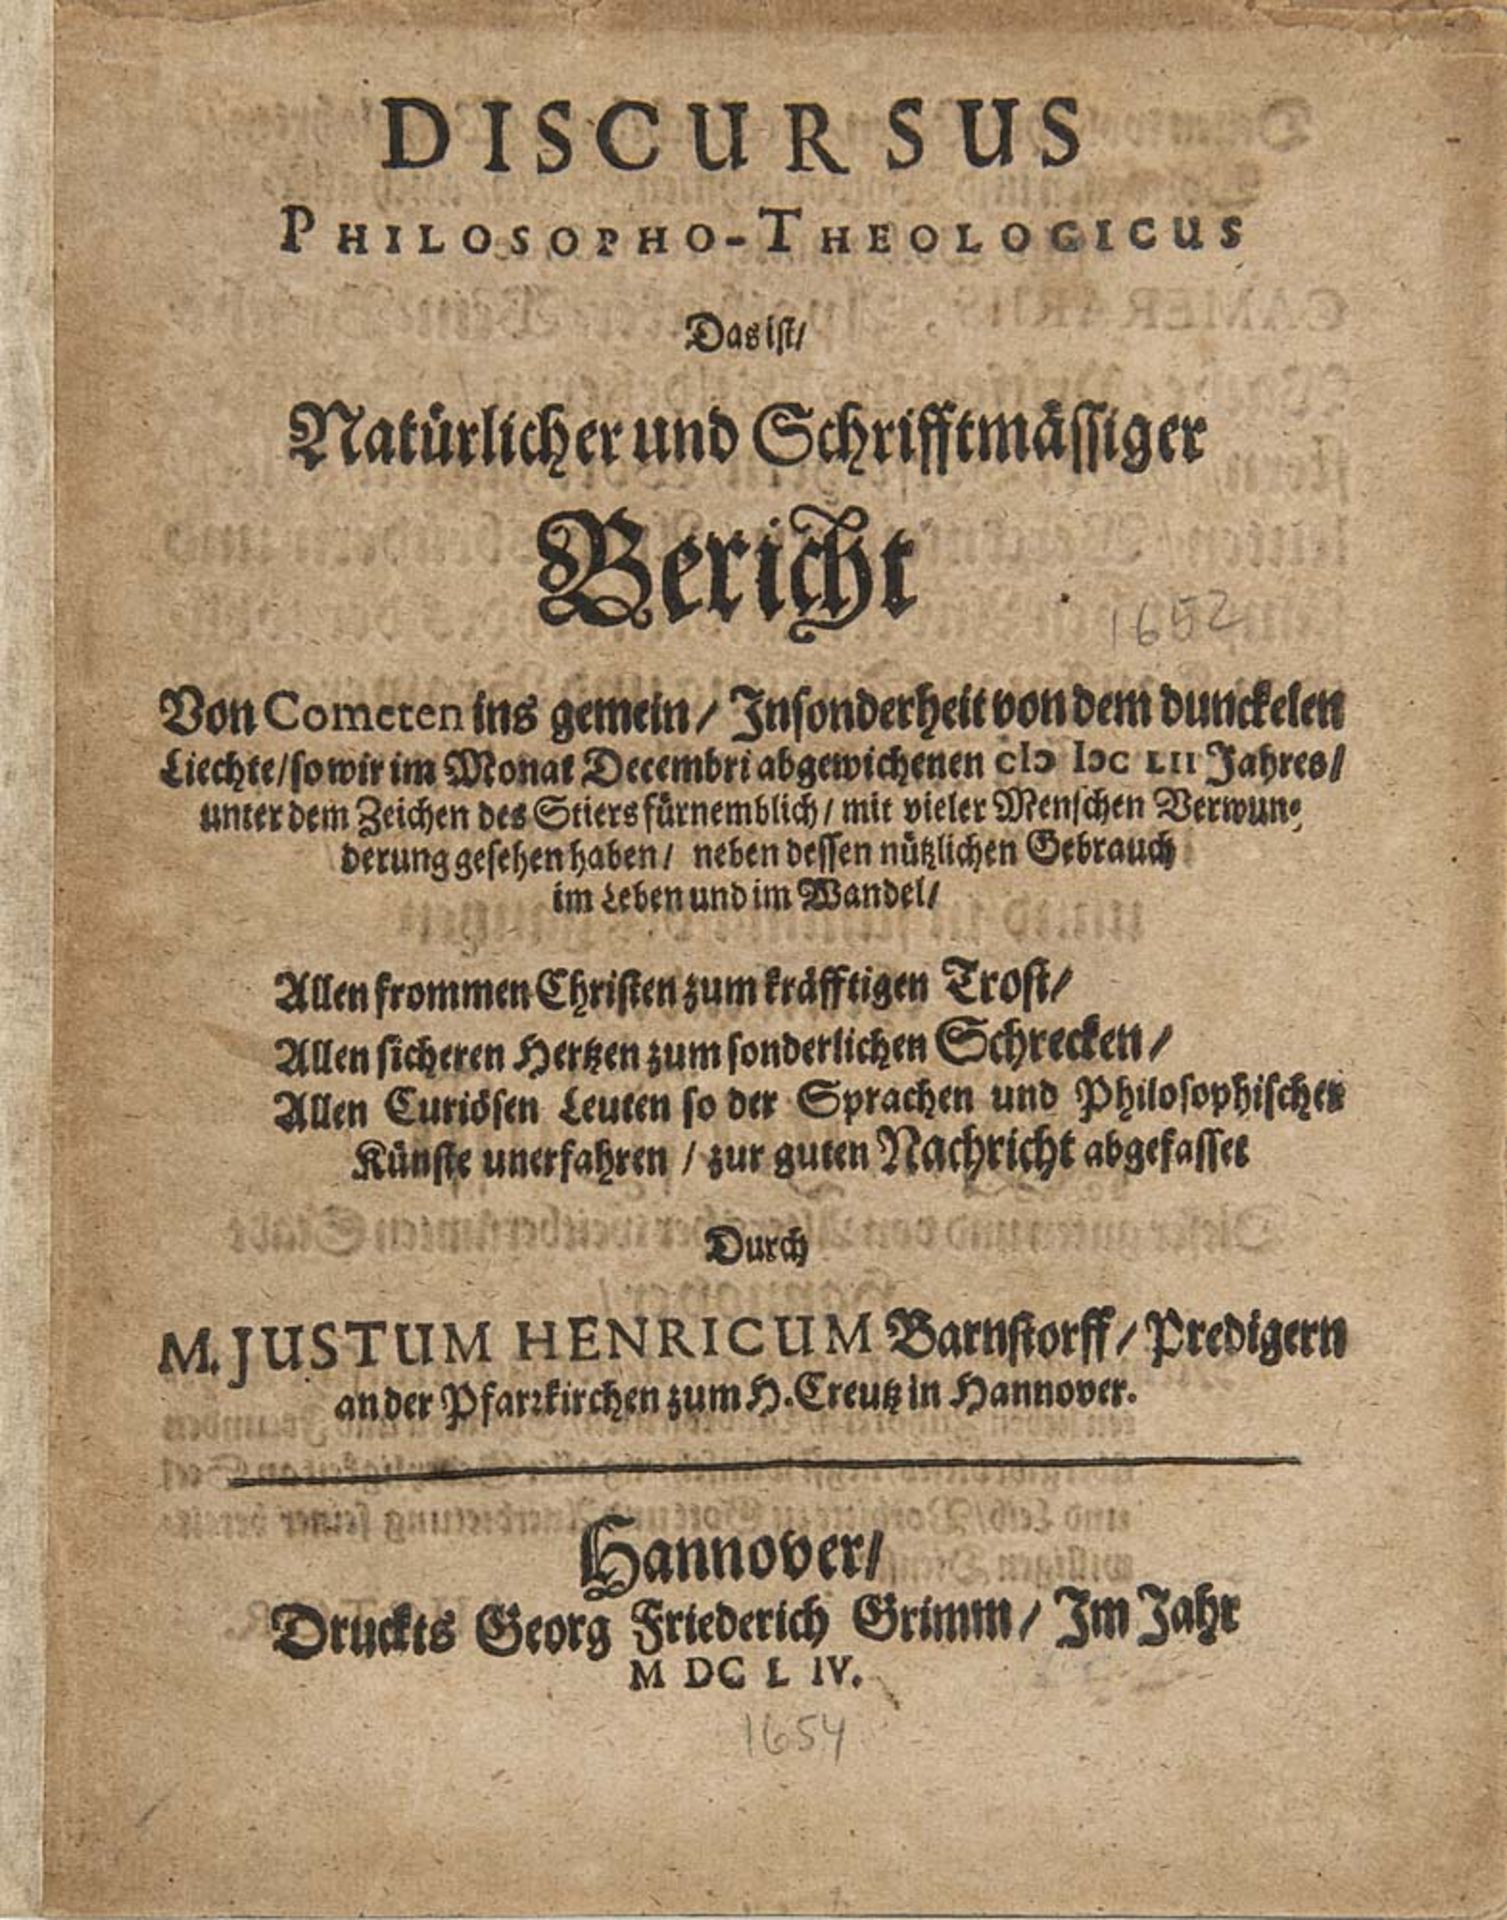 Astronomie - - Barnstorff, Justus Heinrich. Discursus Philosopho-Theologicus, das ist Natürlicher